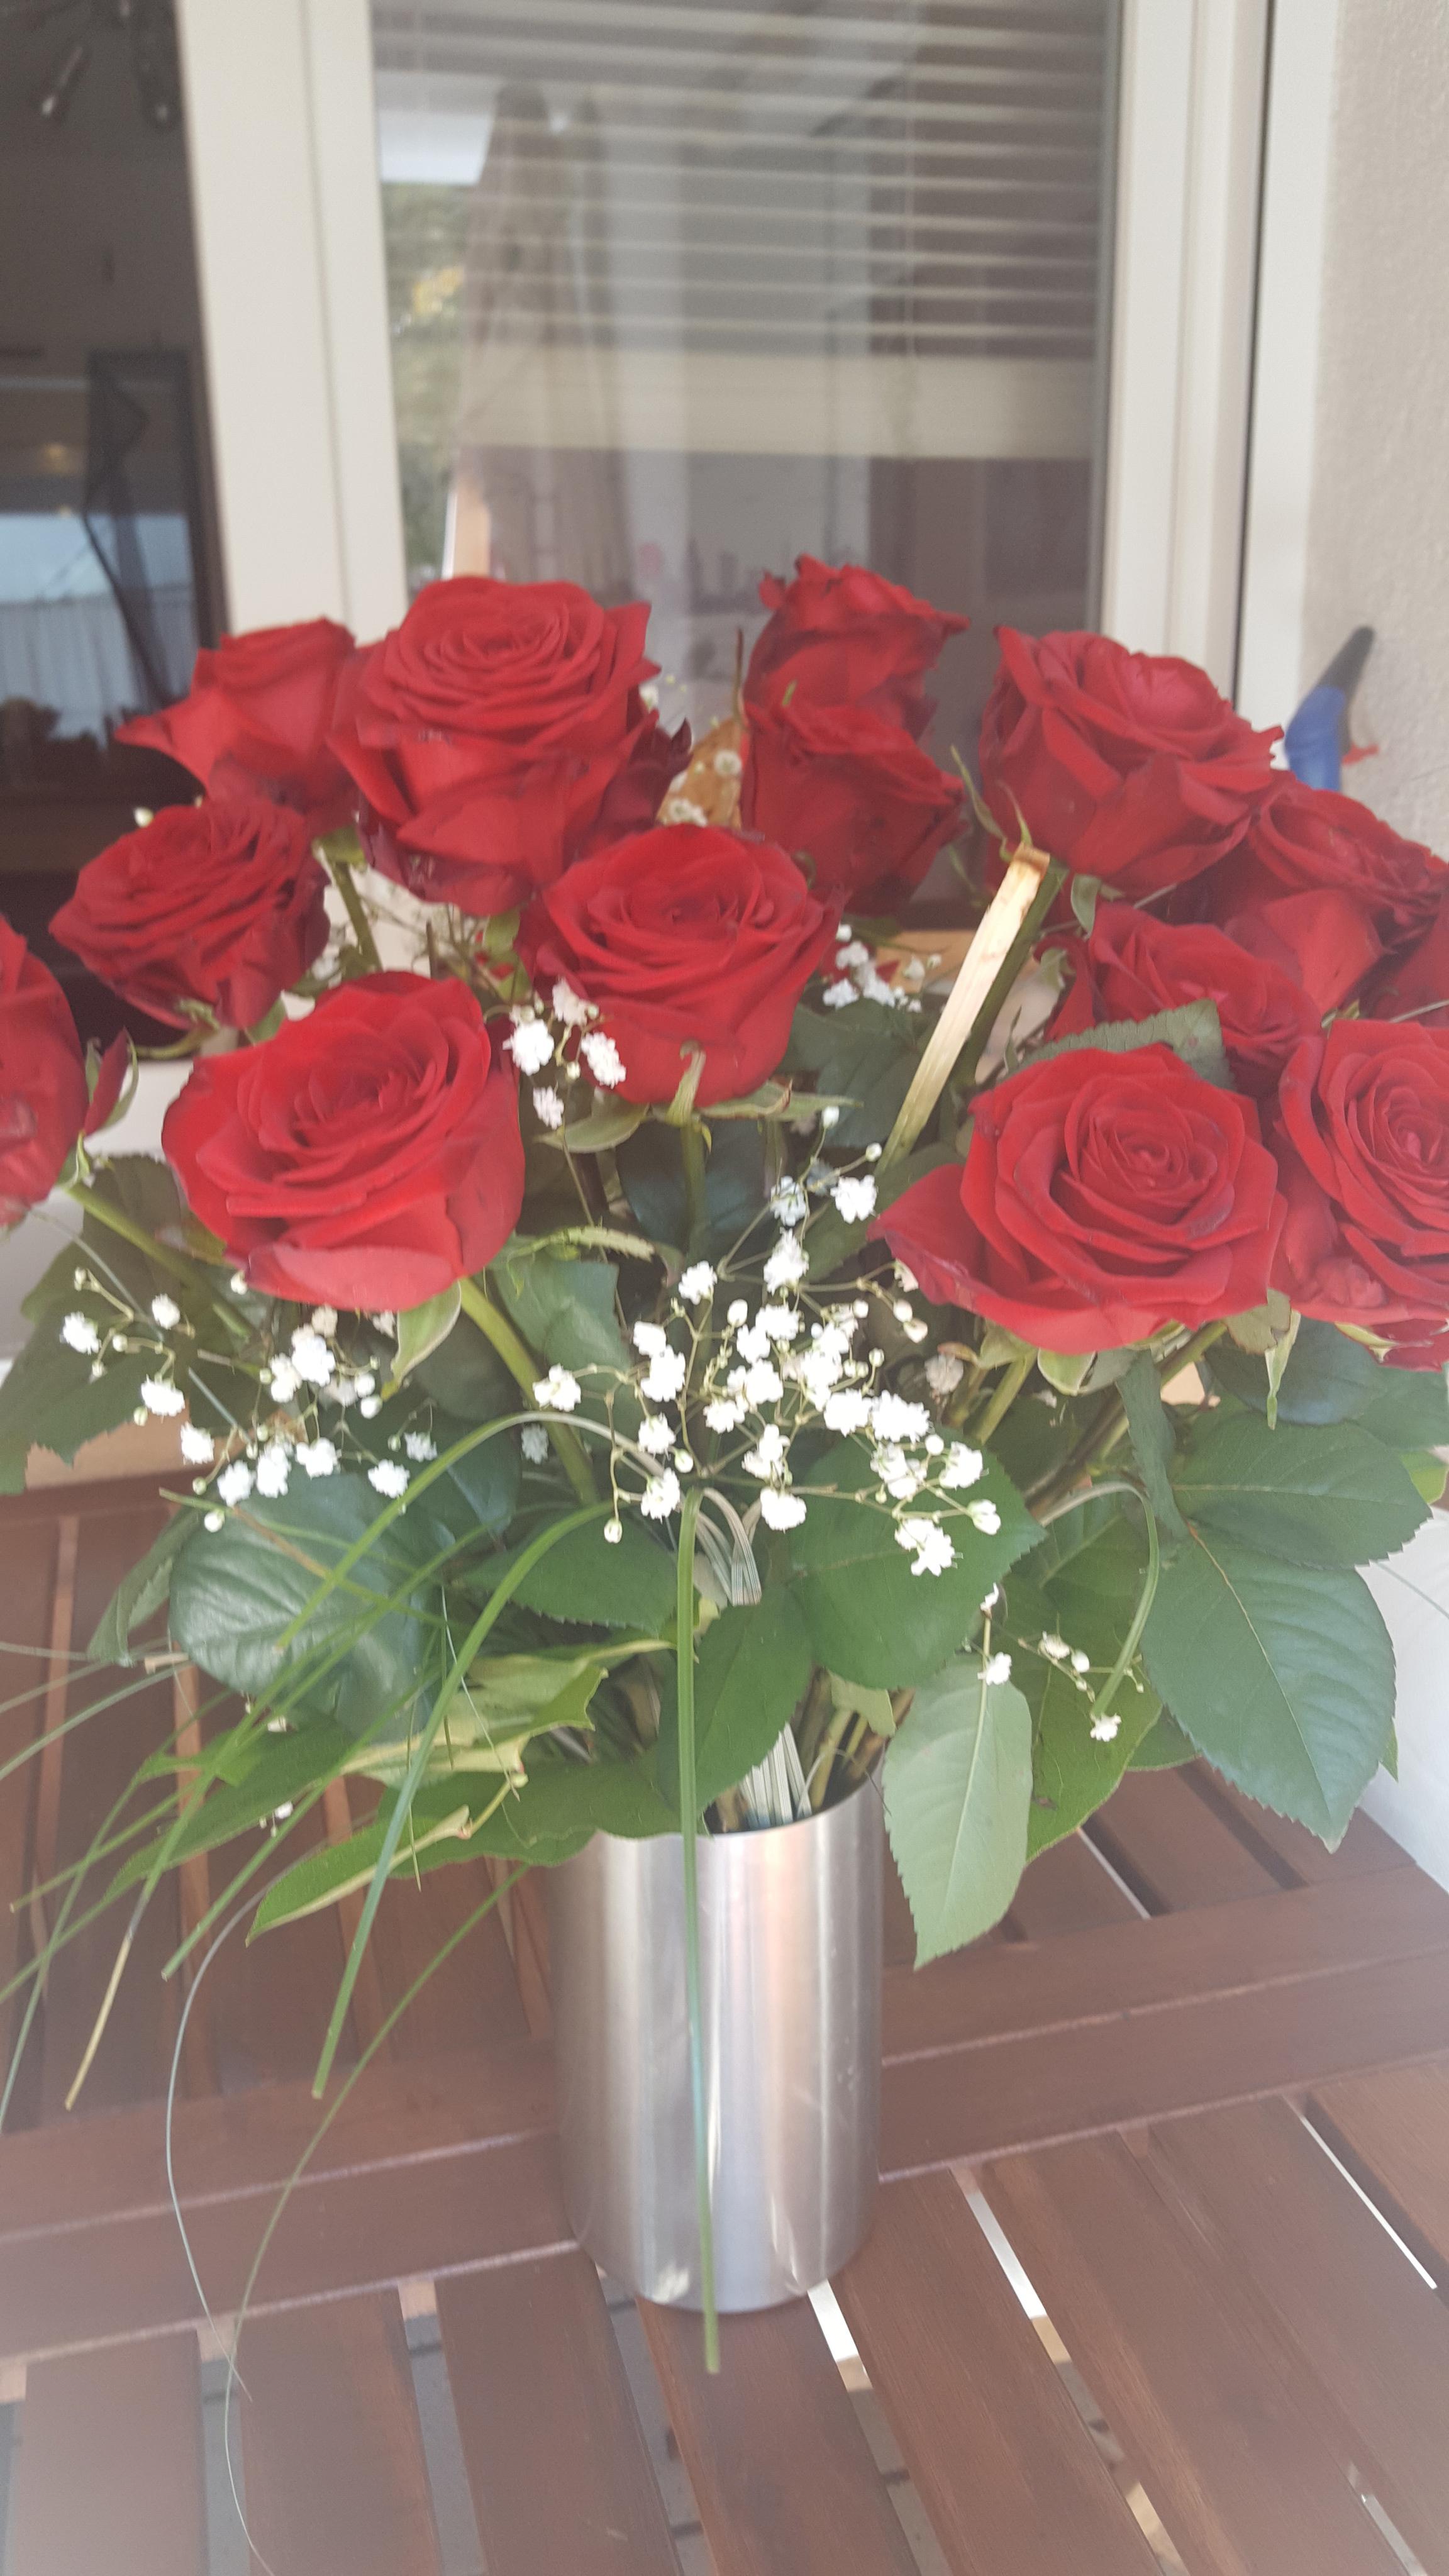 #lifestyle vielen Dank für die Rosen ⚘⚘⚘❤